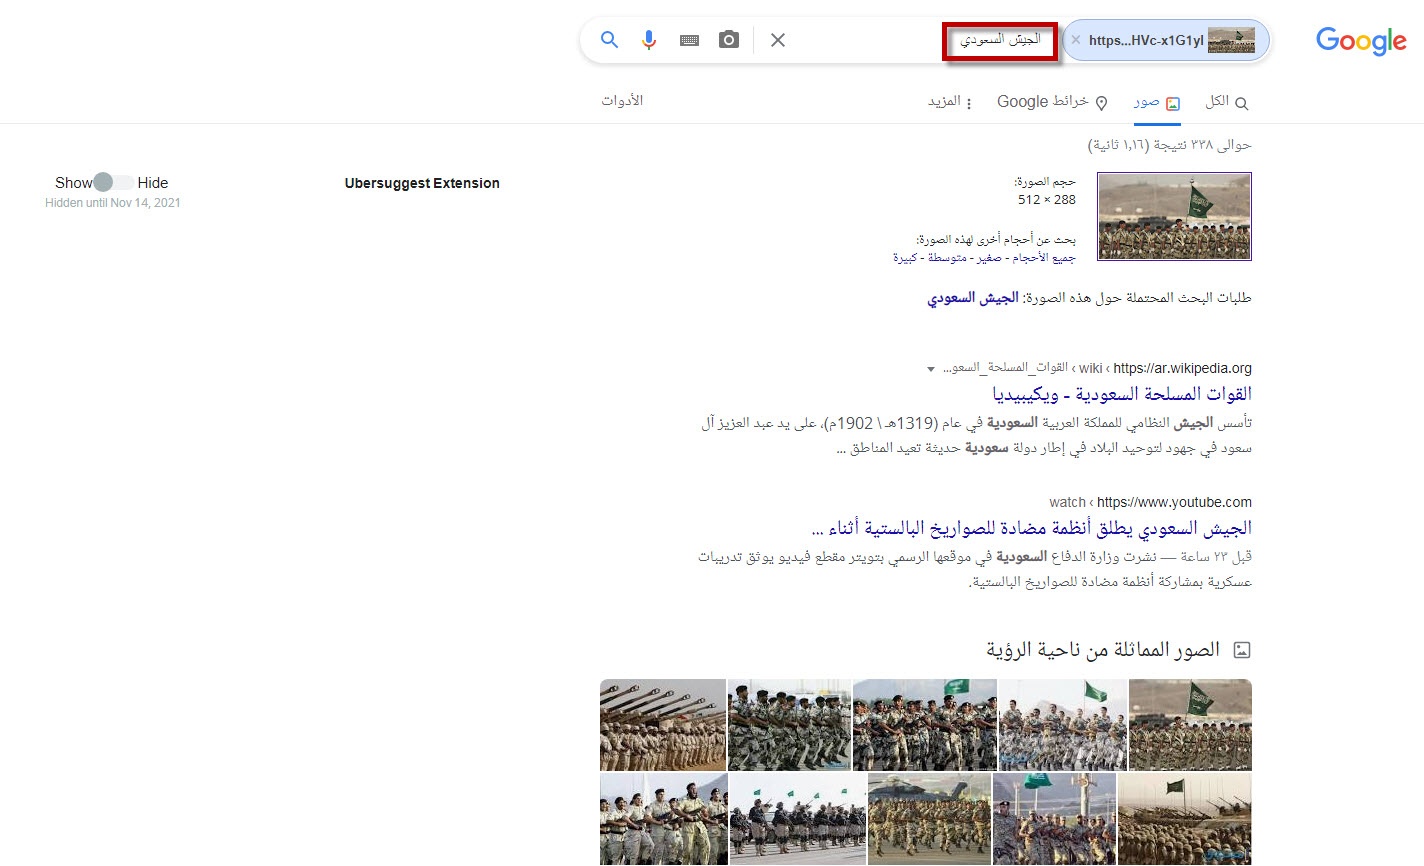 الجيش السعودي البحث عن طريق الصور